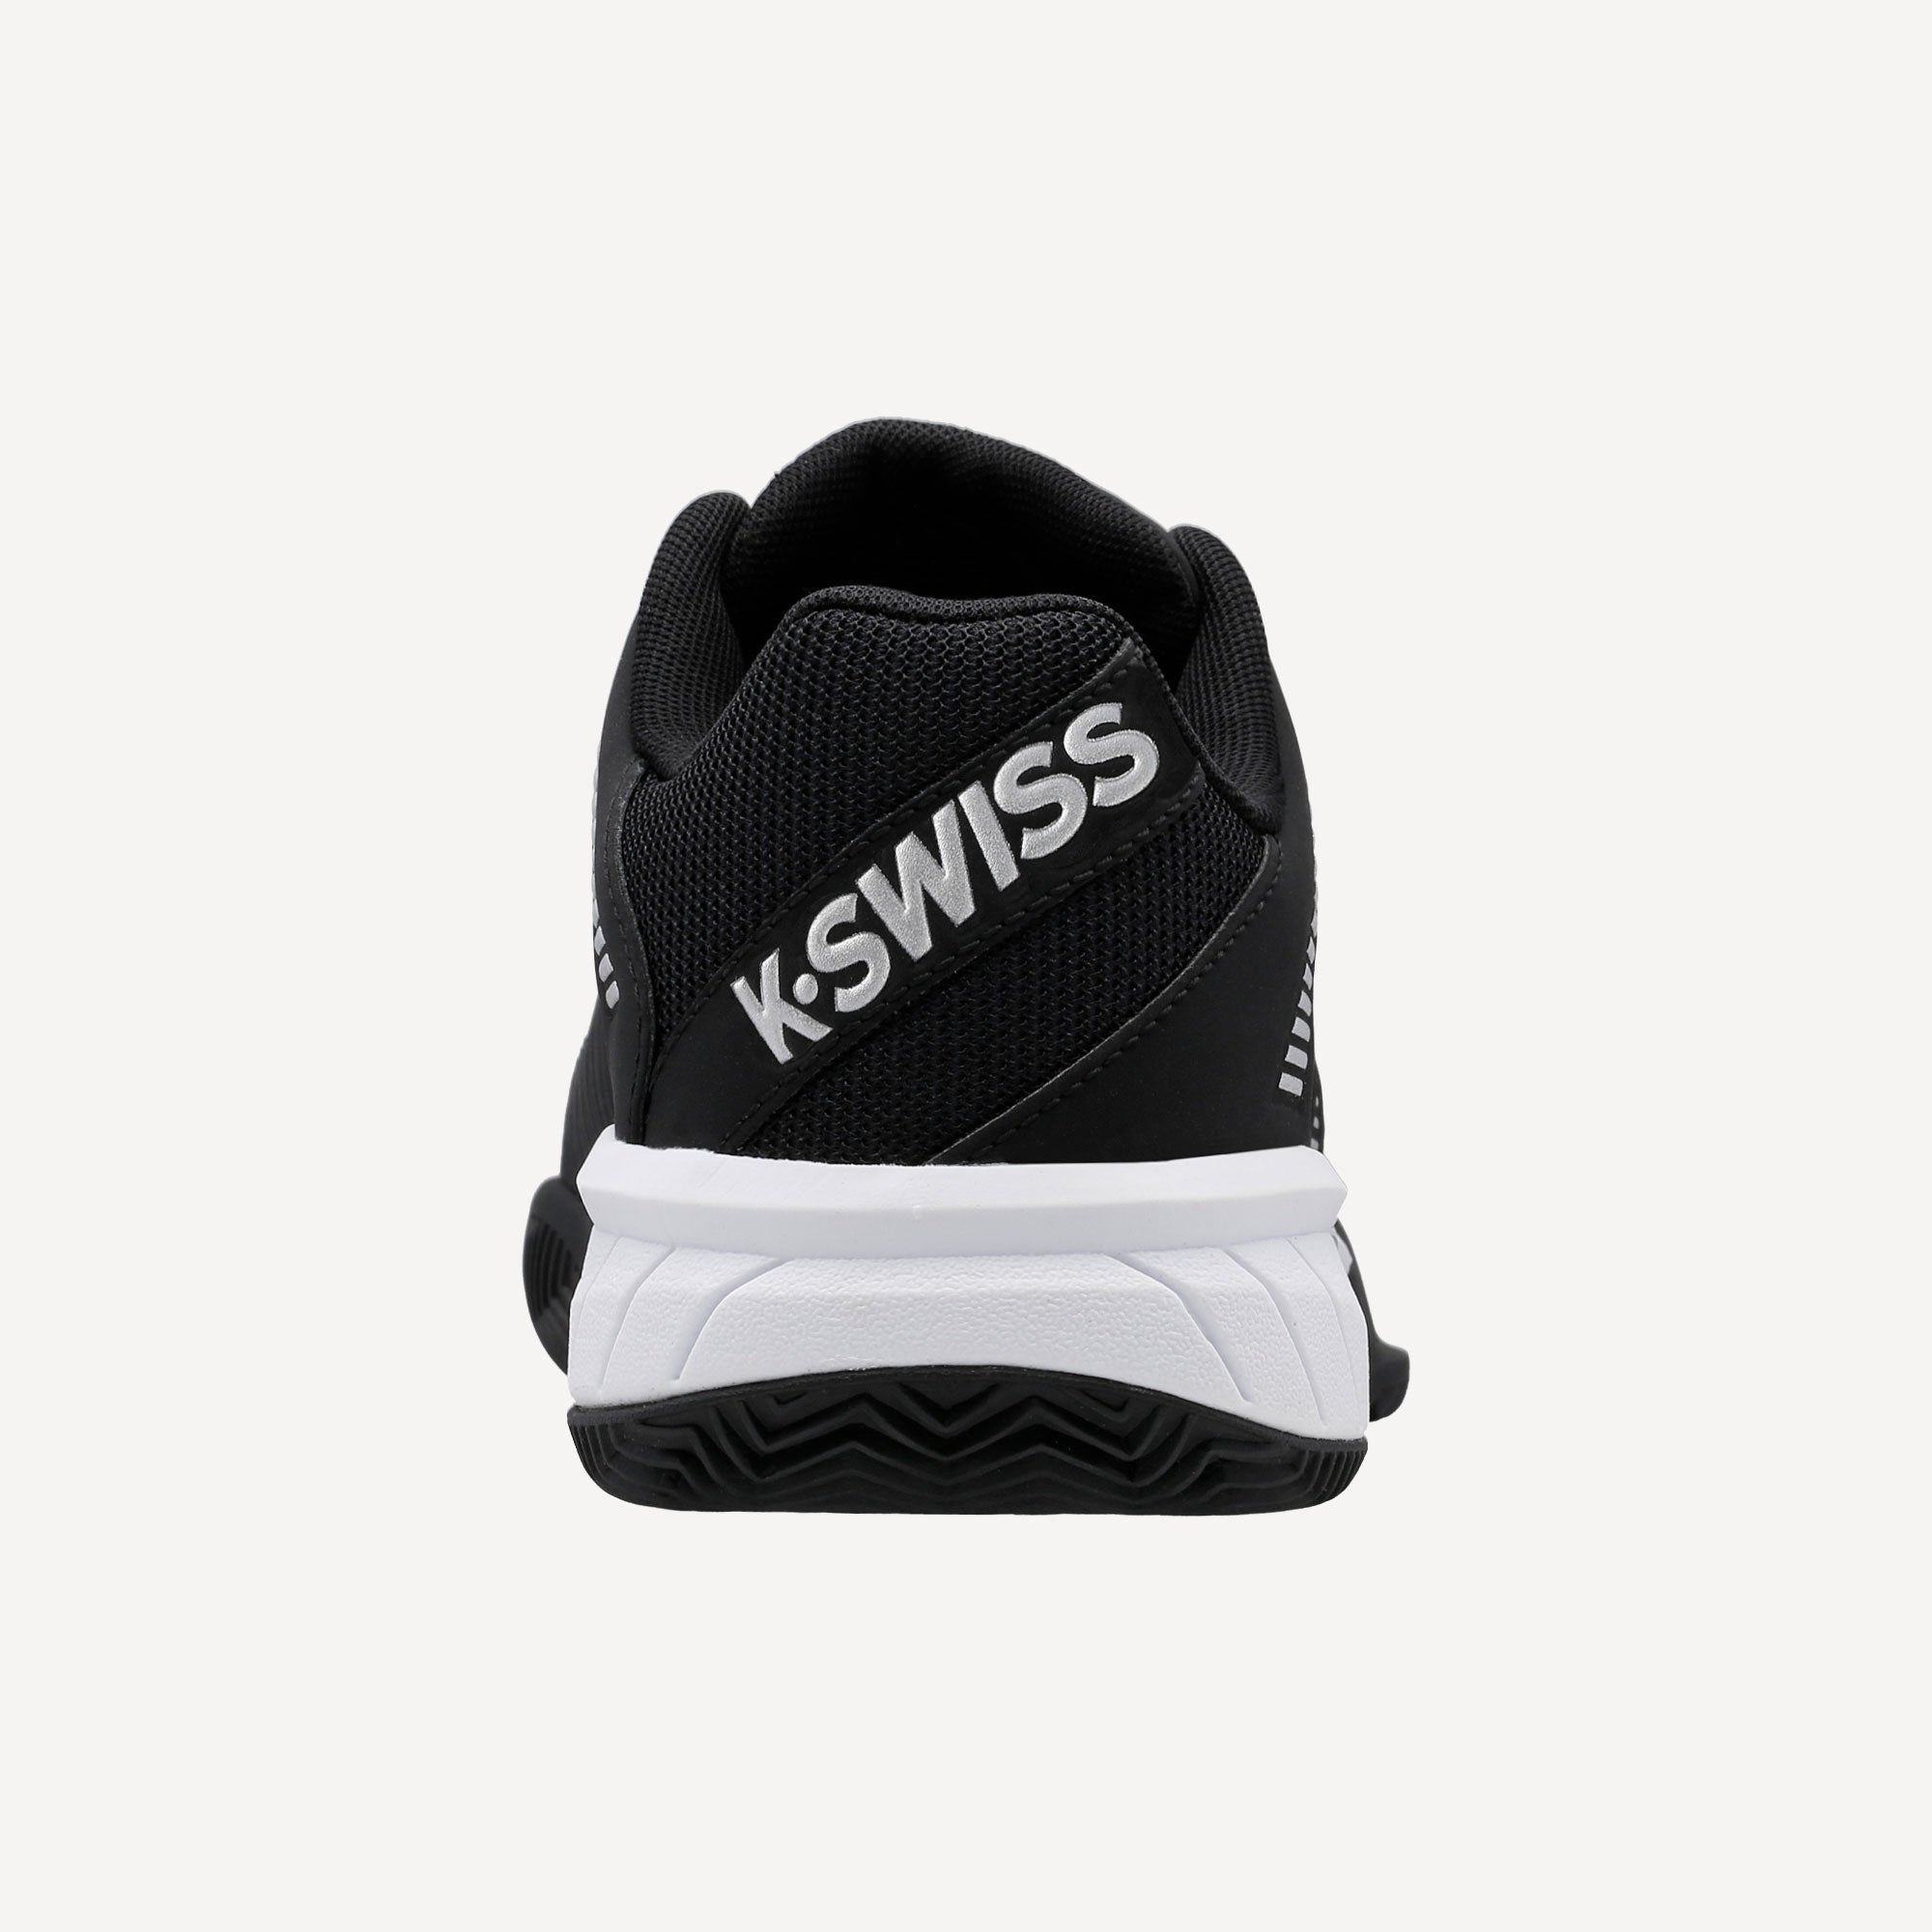 K-Swiss Express Light 2 Women's Clay Court Tennis Shoes Black (7)